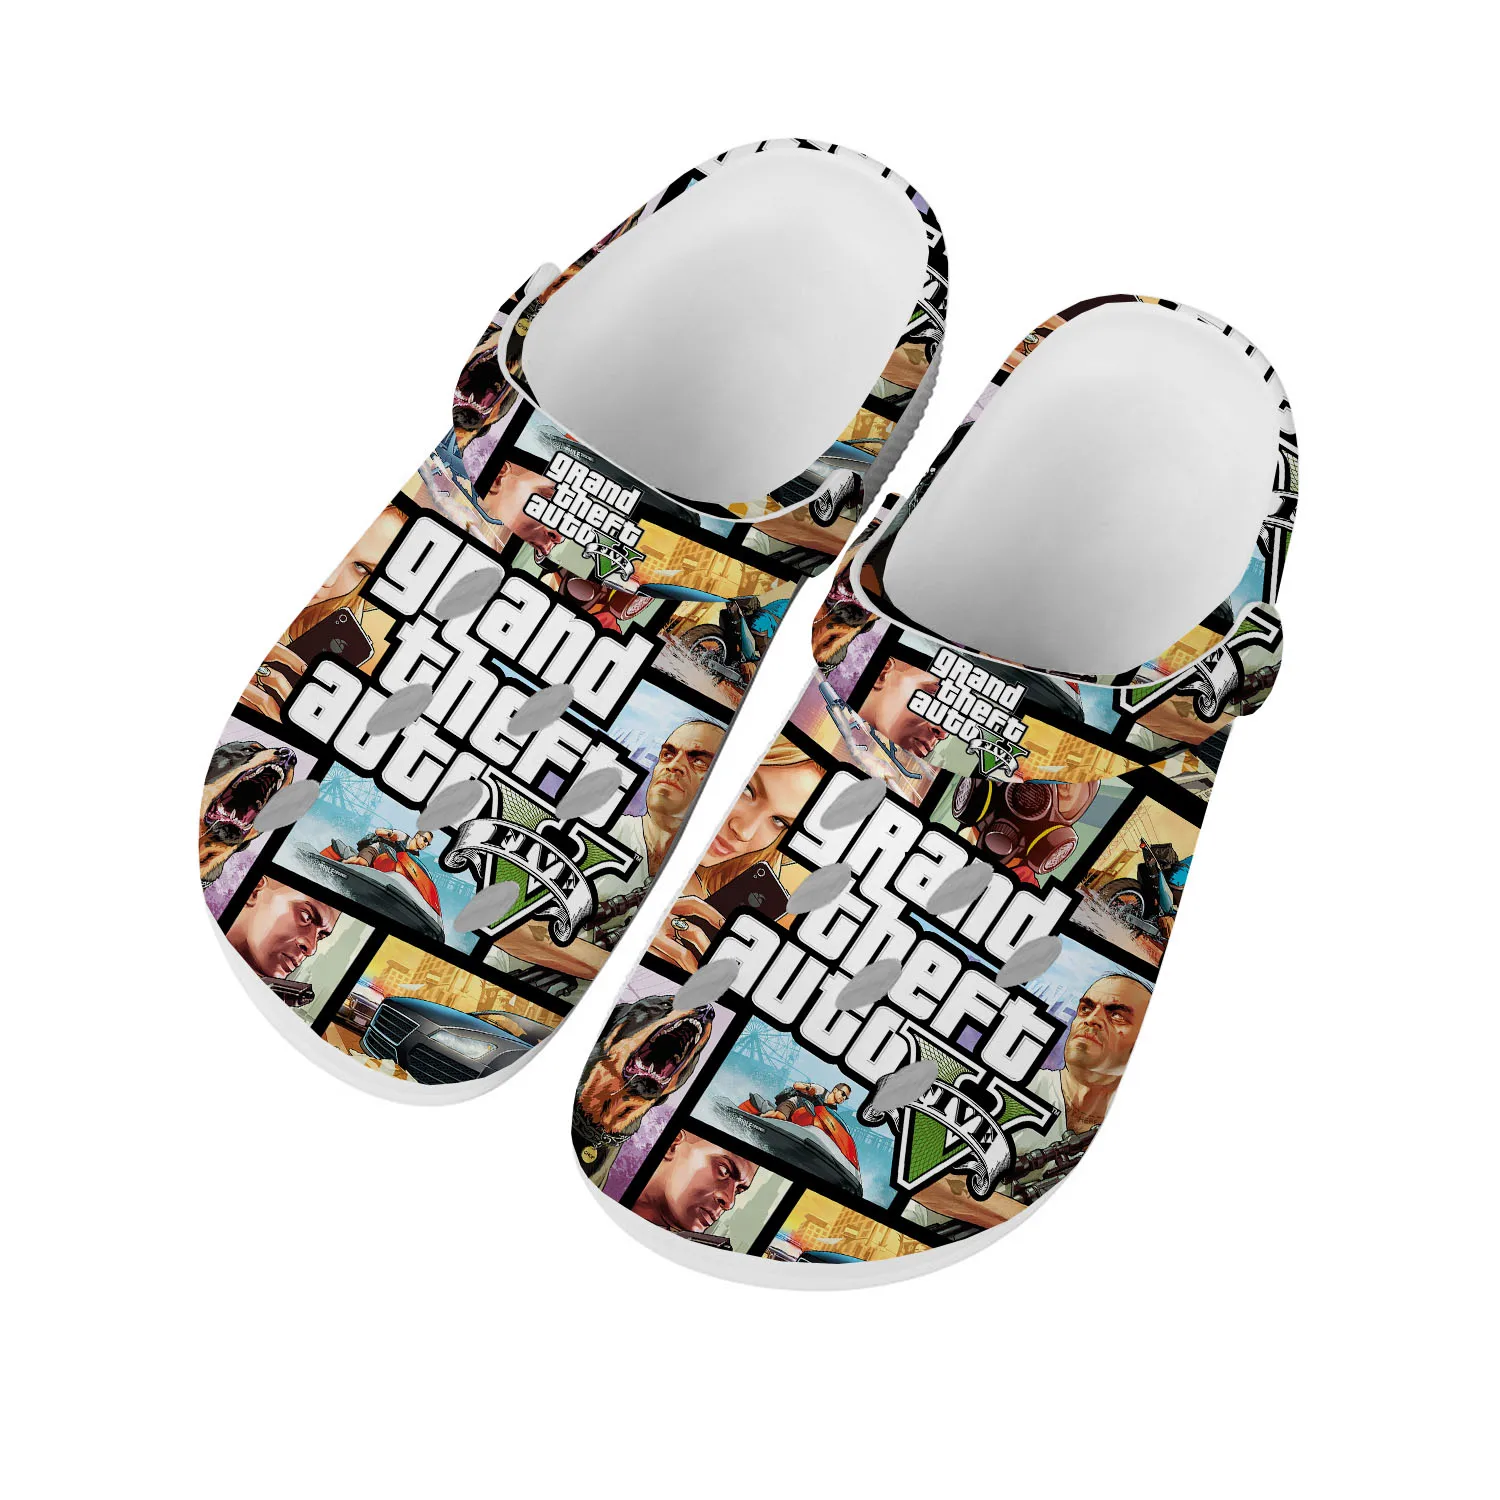 

Сабо Grand Theft Auto V 5 для мужчин и женщин, обувь для дома и досуга, для подростков, изготовленная на заказ, тапочки с отверстиями для сада, пляжа, GTA Five Game